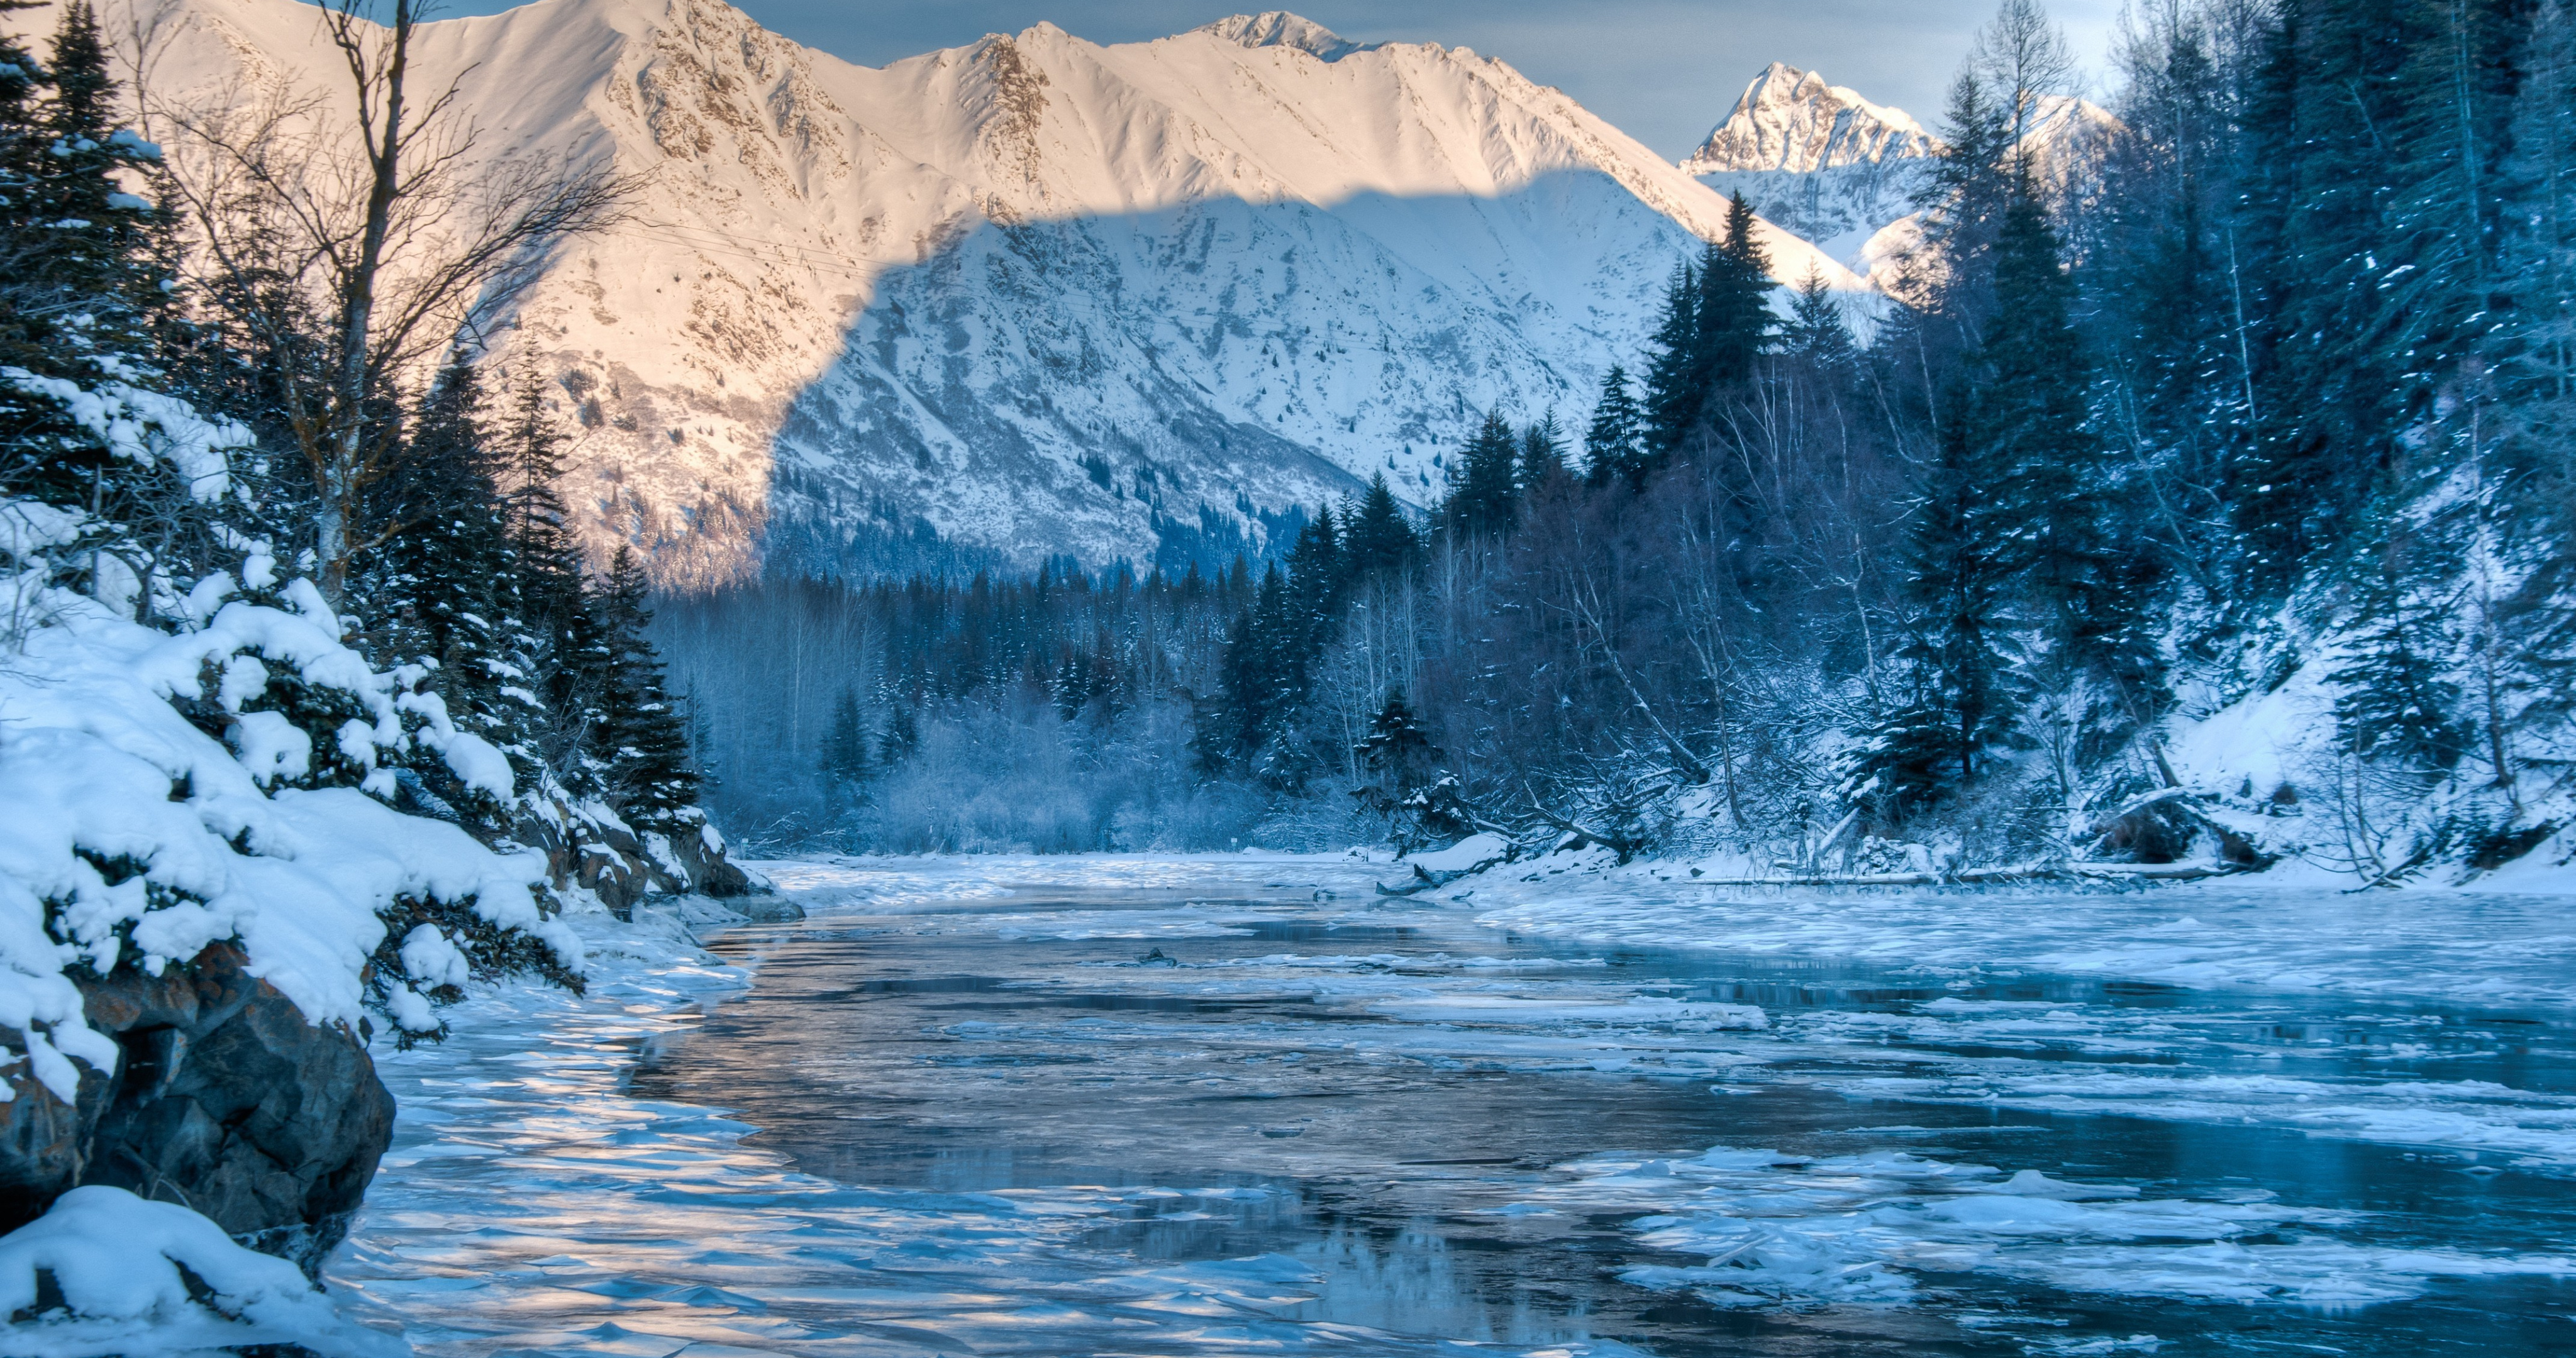 Обои на рабочий стол Alaska, река, зима, пейзаж, горы, природа, лес